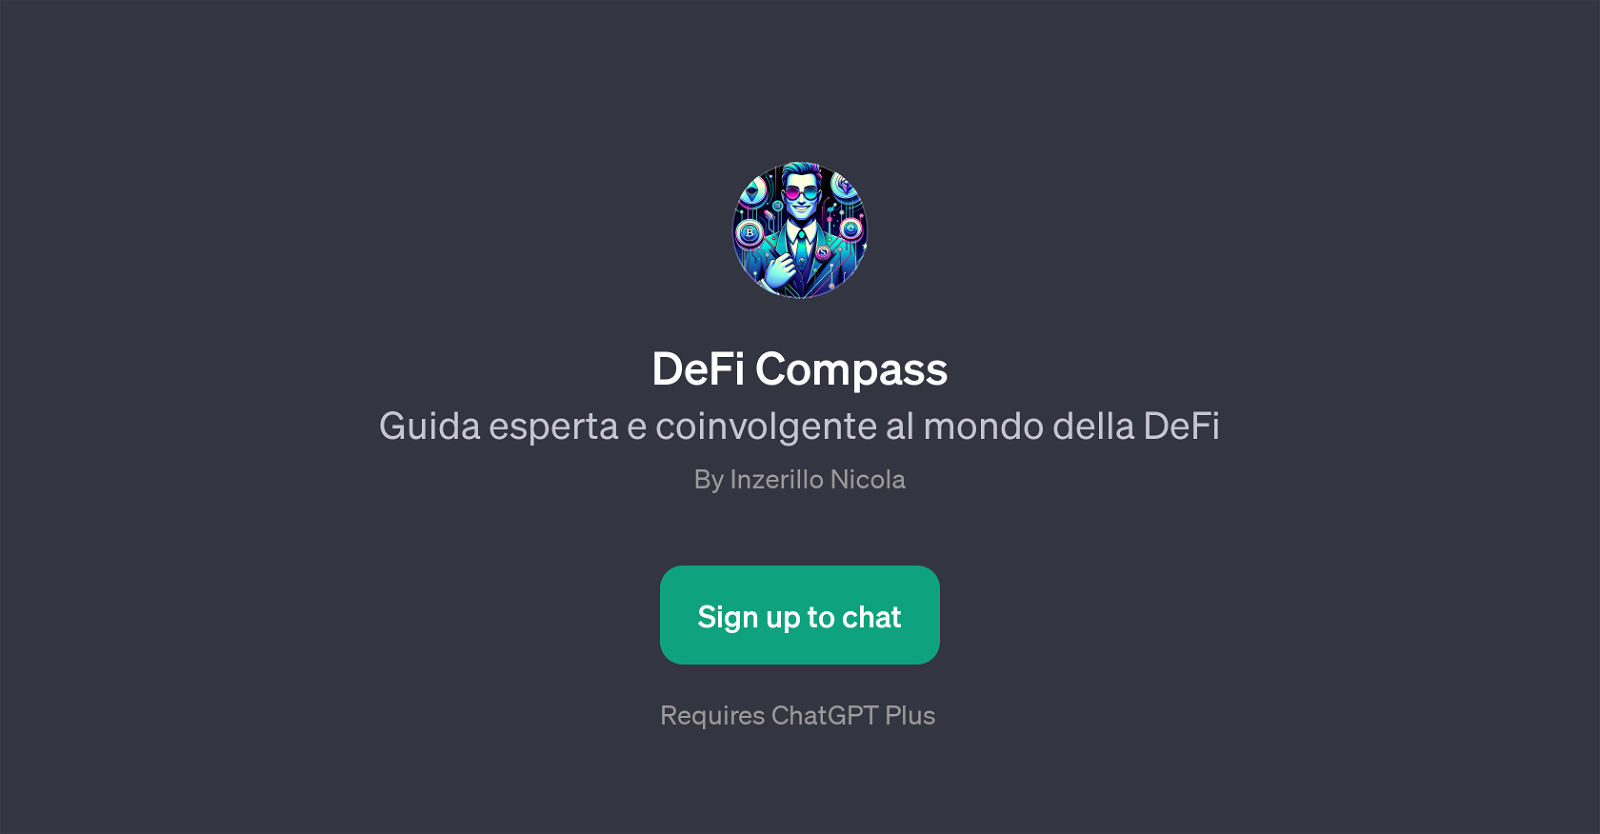 DeFi Compass website